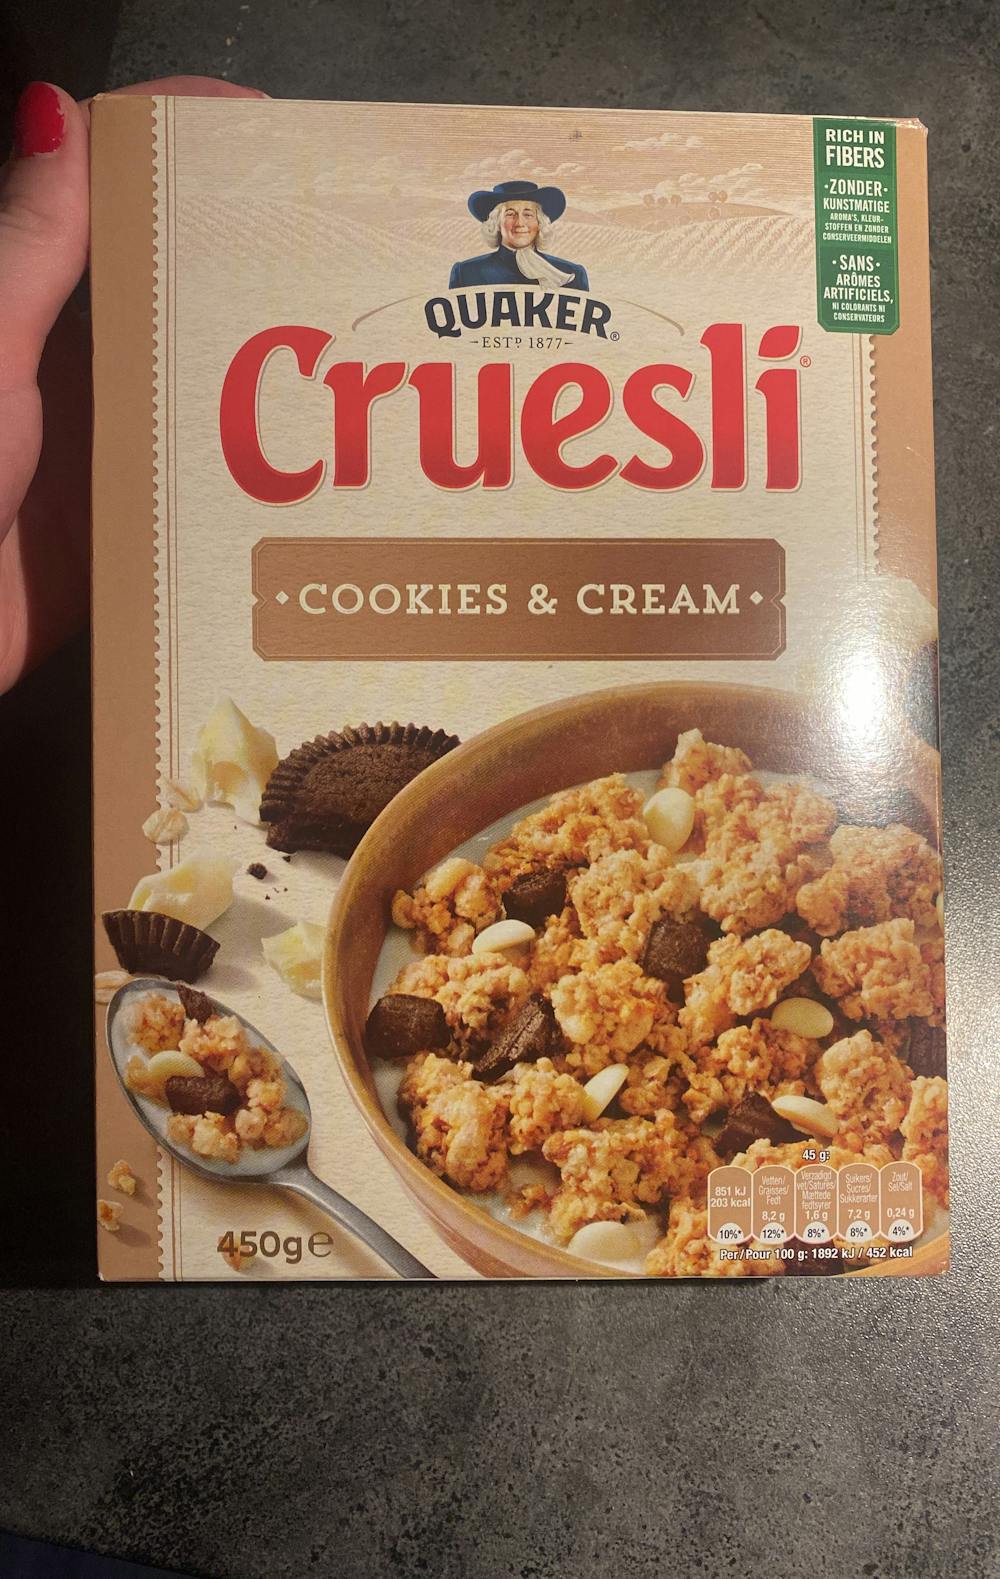 Cruesli cookies & cream, Quaker